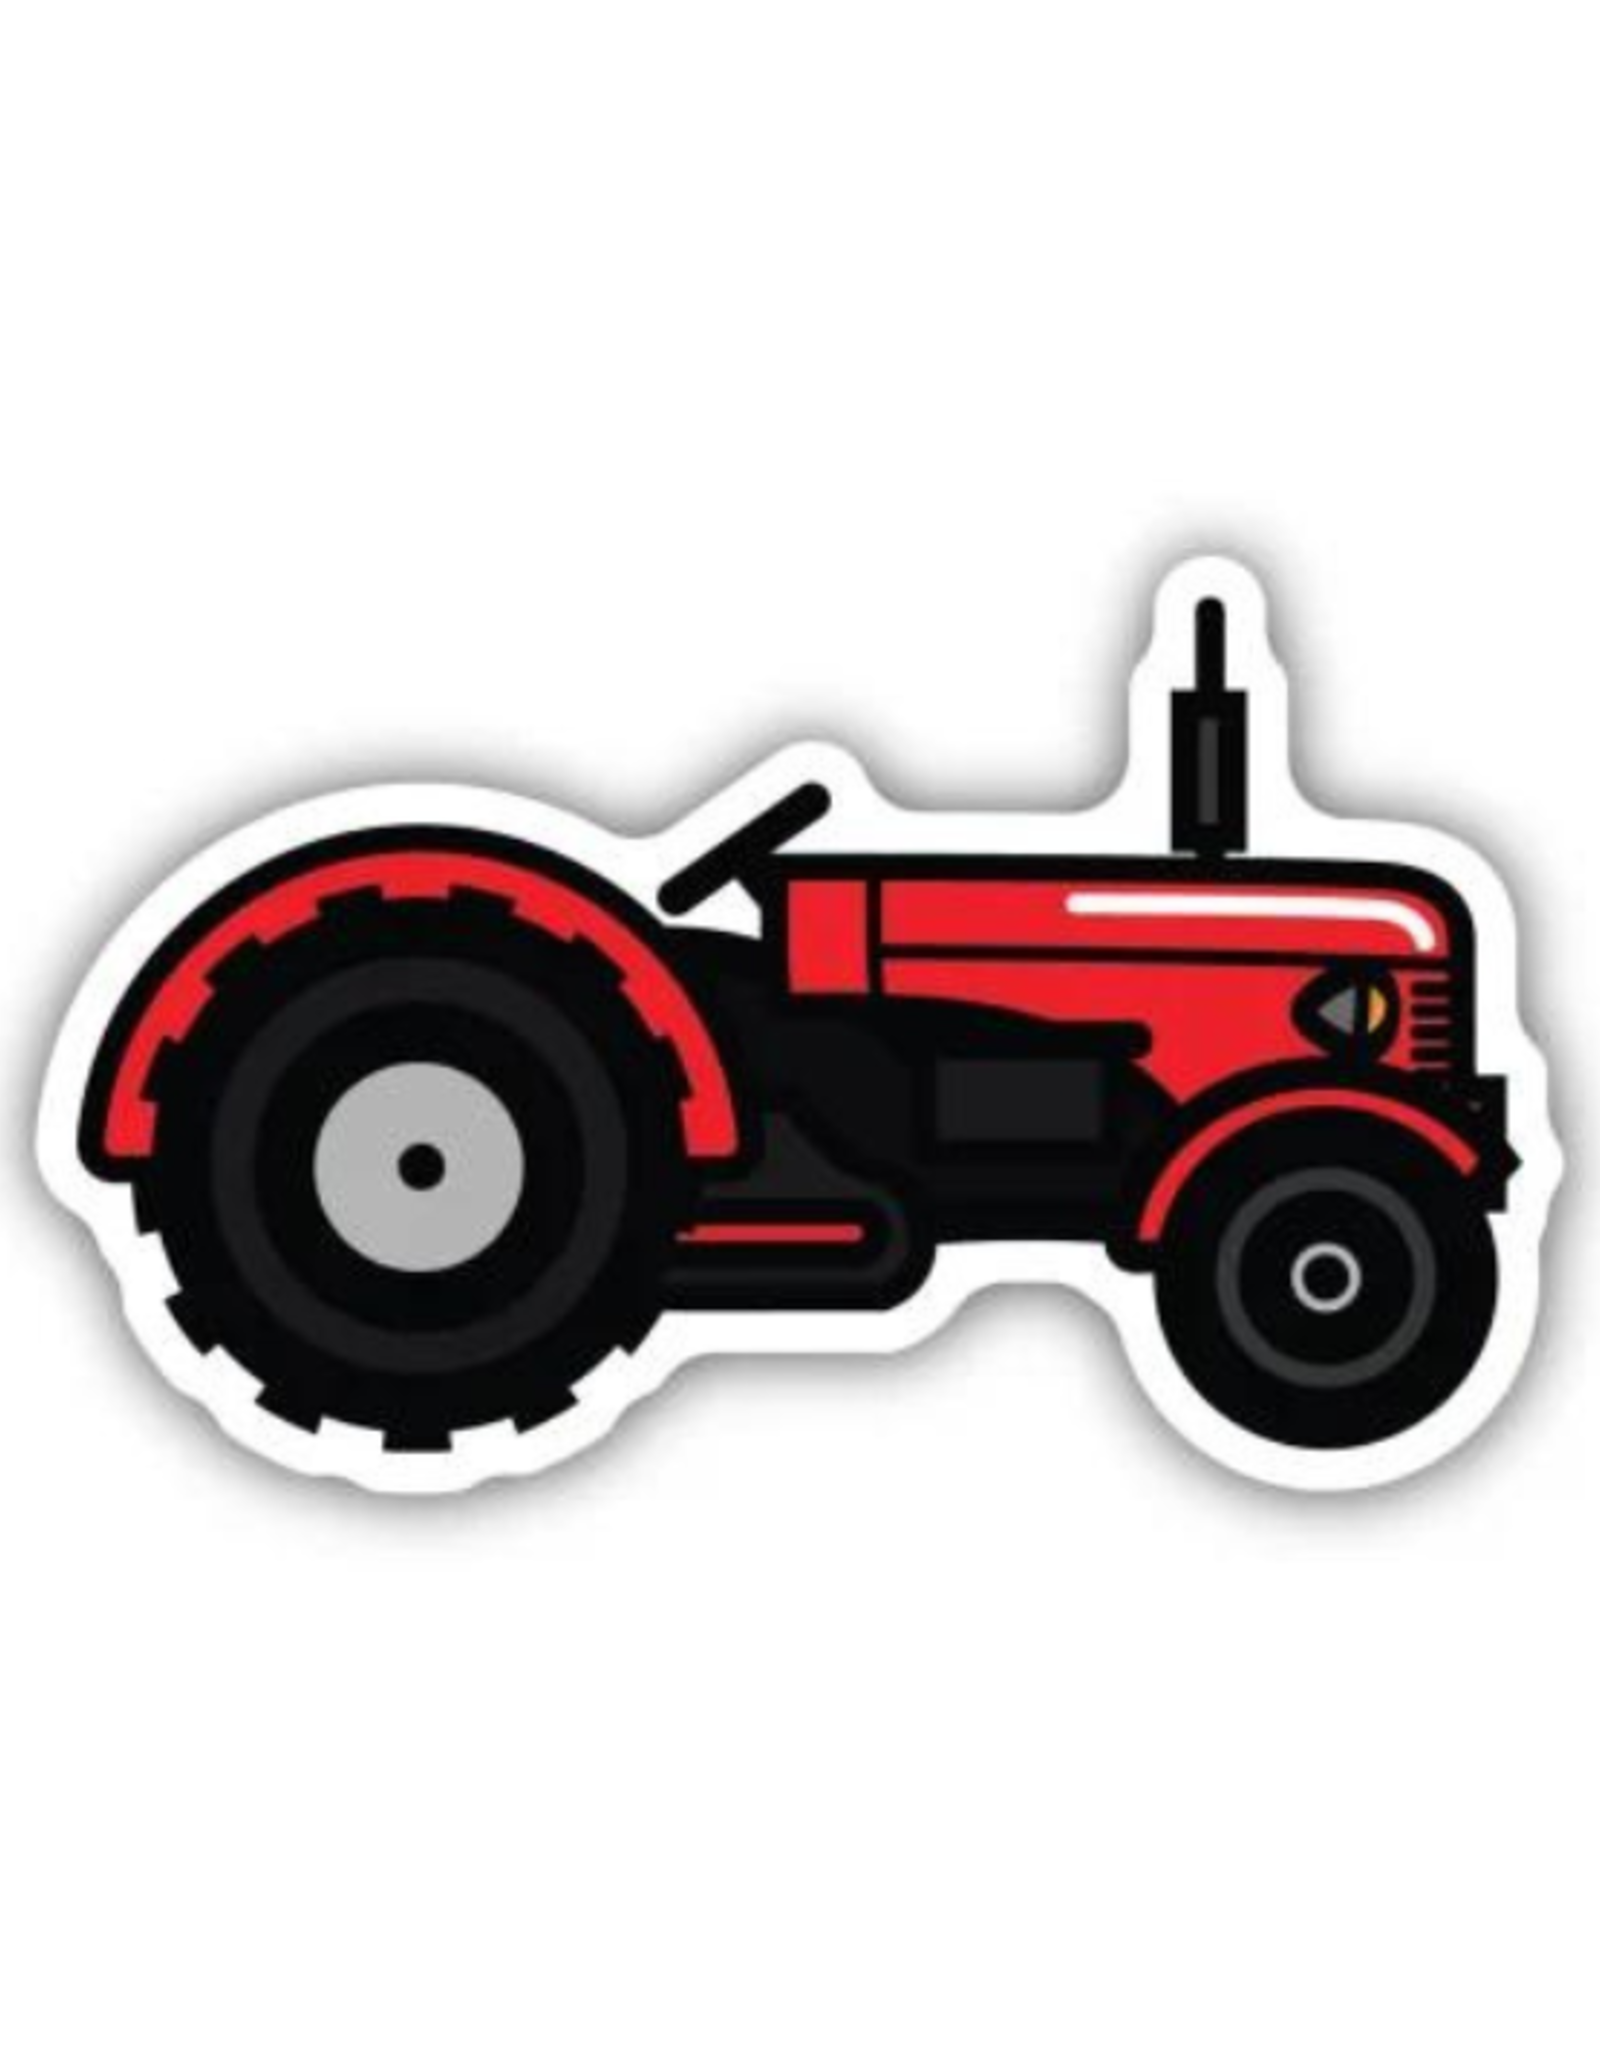 Stickers Northwest Inc. Stickers Northwest Inc. - Tractor Sticker